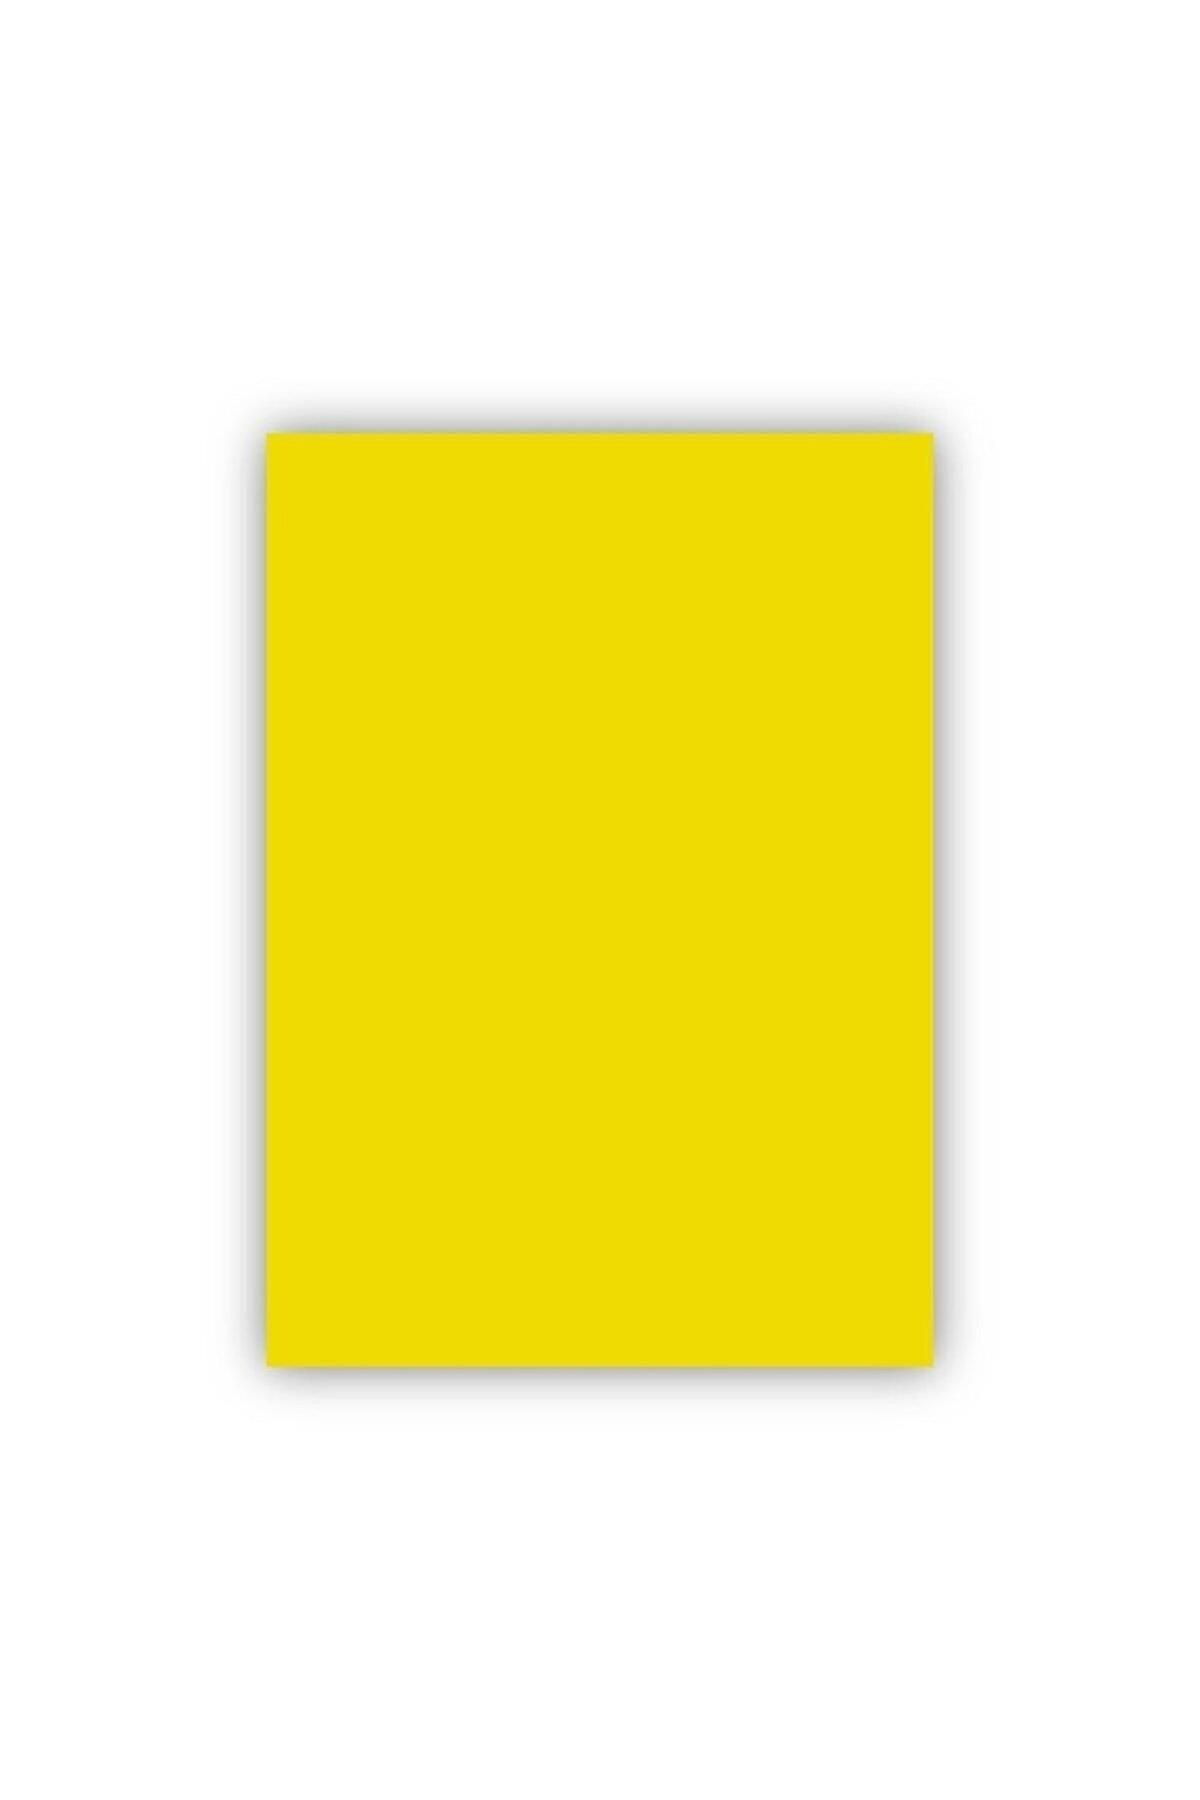 Mondi Fon Kartonu 50x70 Cm 120 gram Kanarya Sarı Fon Kartonu (100 LÜ PAKET)